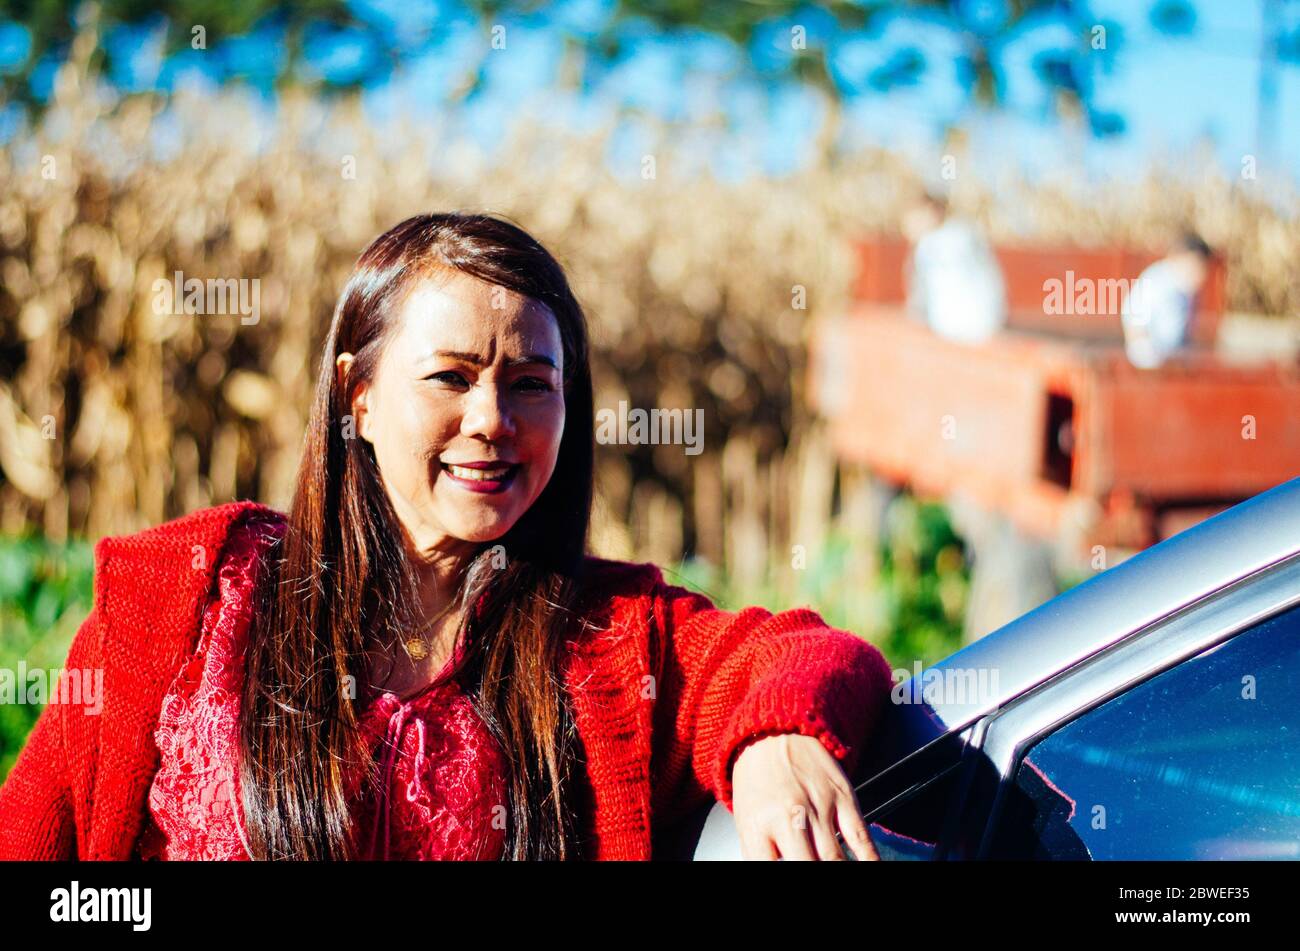 Indonesische Frau mittleren Alters in roten Kleidern posiert und lächelt vor einem blauen alten LKW von einem Bauernhof. Stockfoto